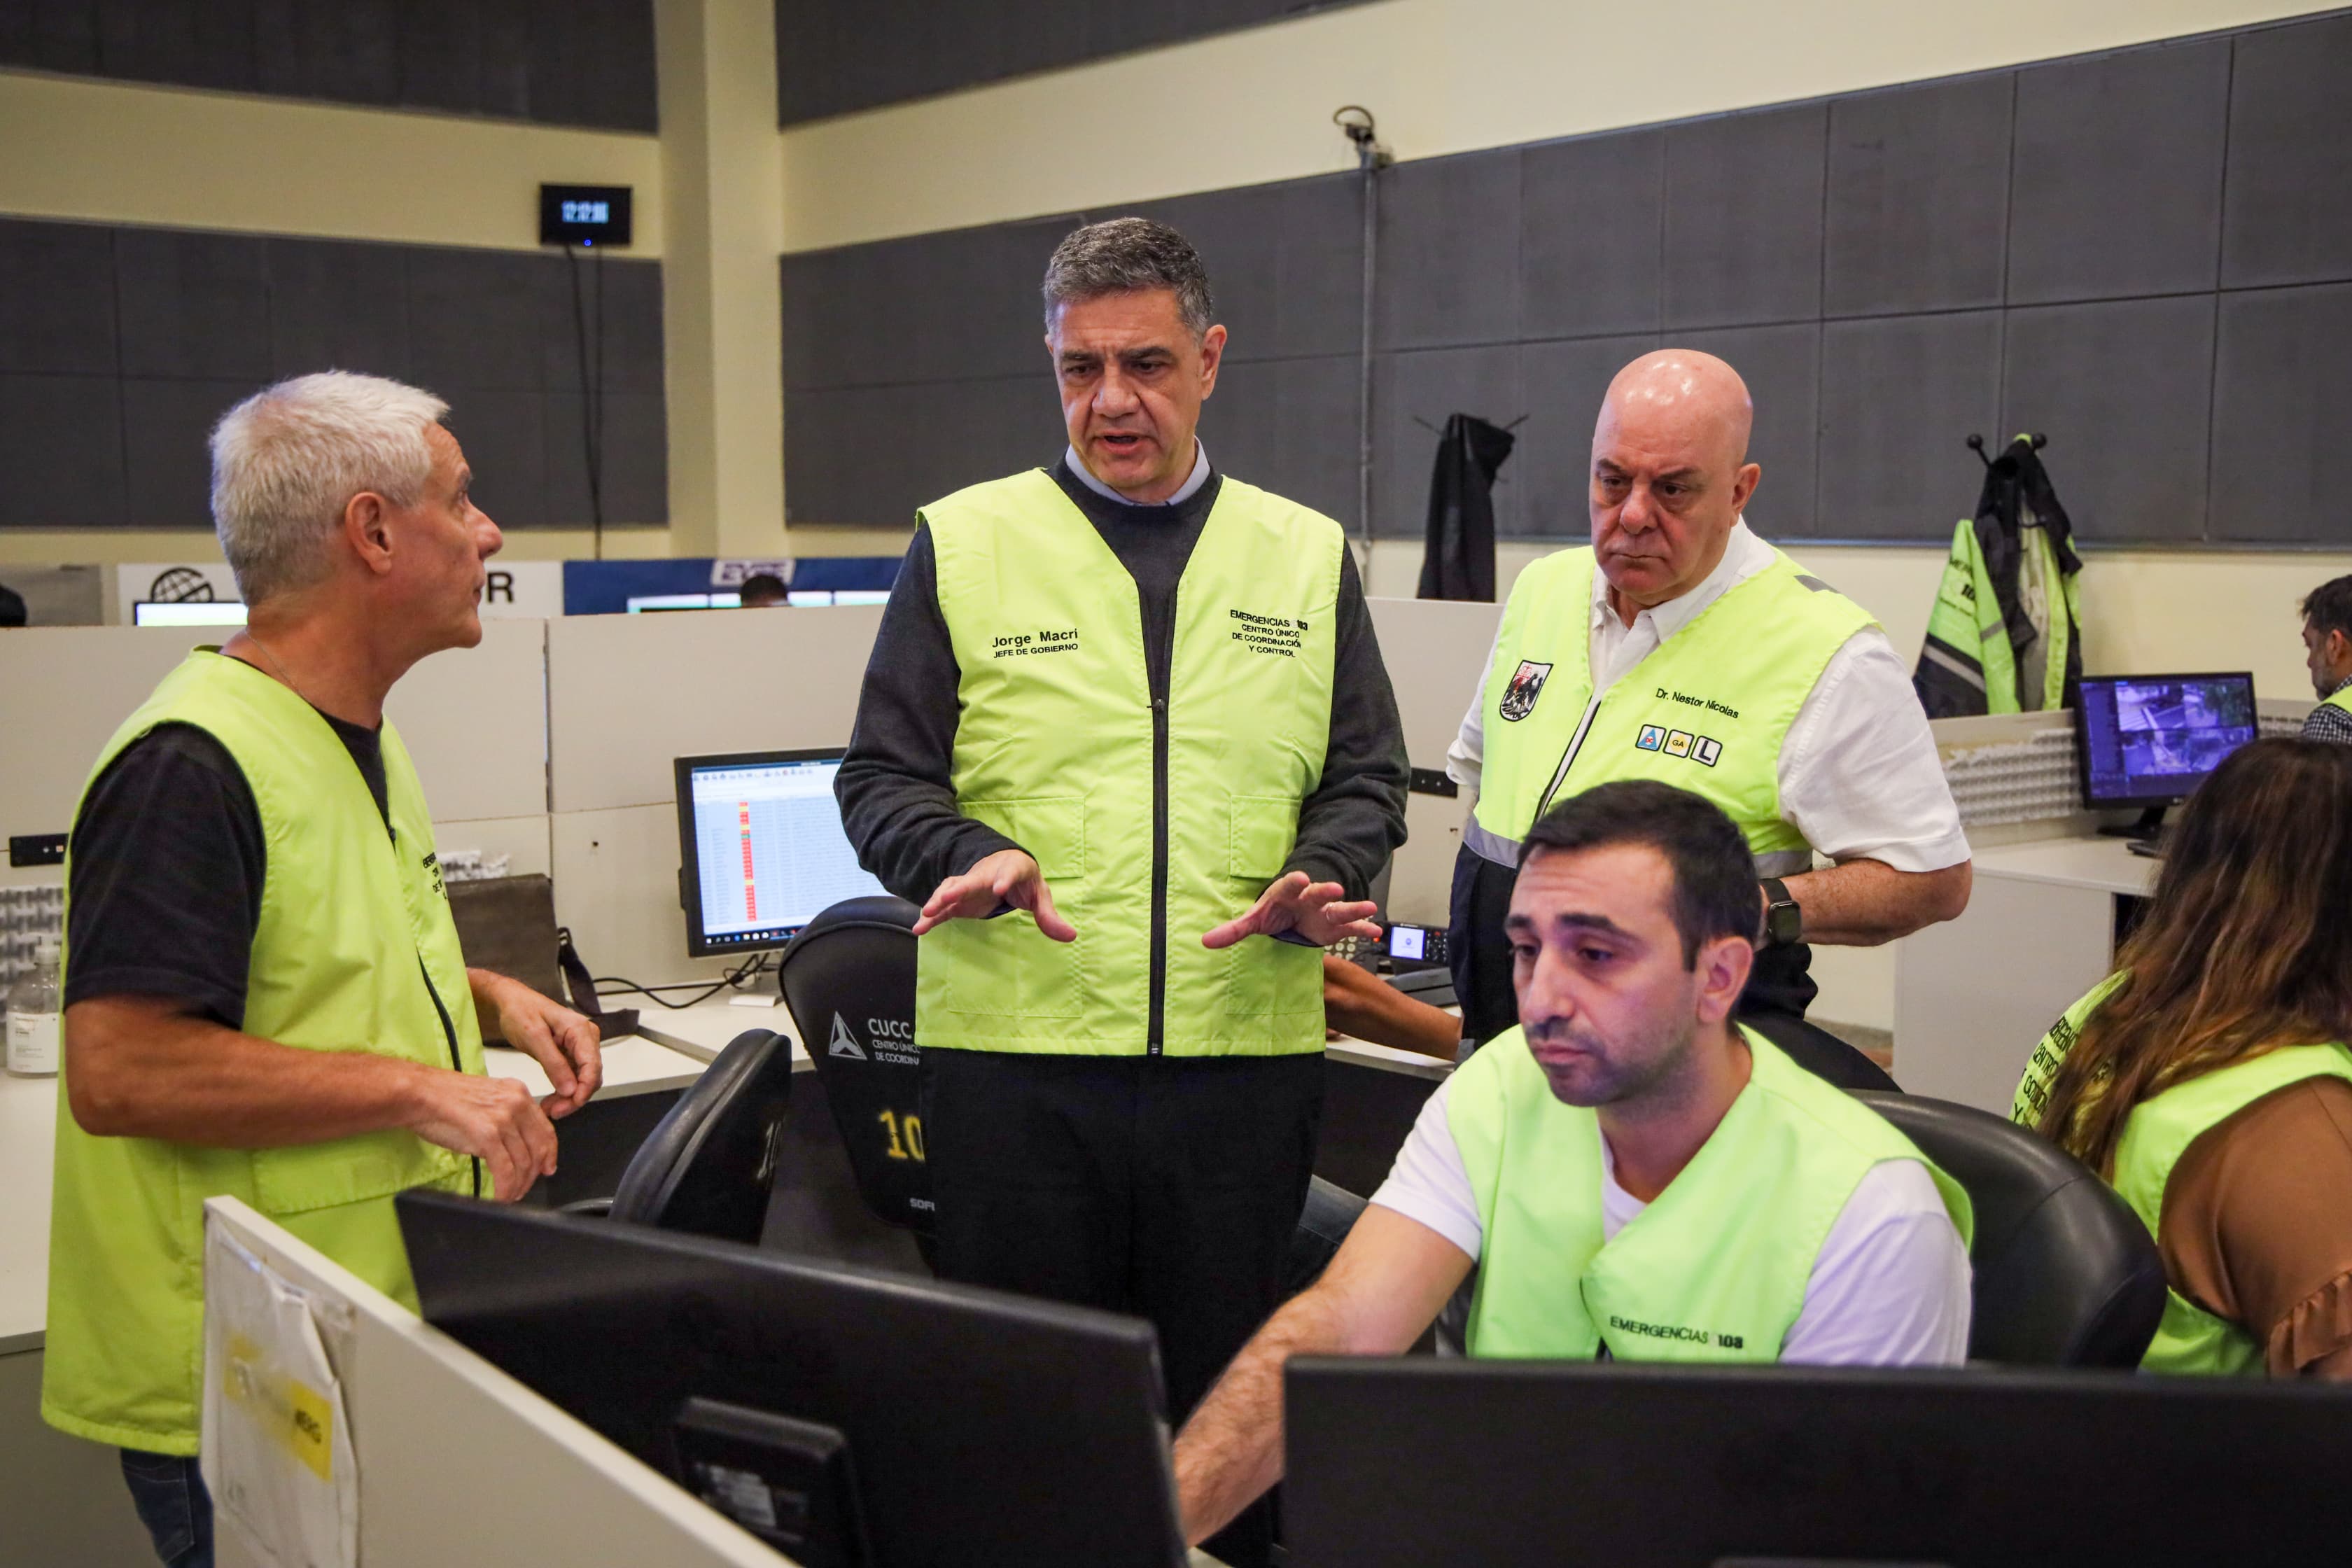 Jorge Macri monitorea los trabajos por la tormenta: “Tenemos a 800 personas trabajando en la calle para poder responder rápido”